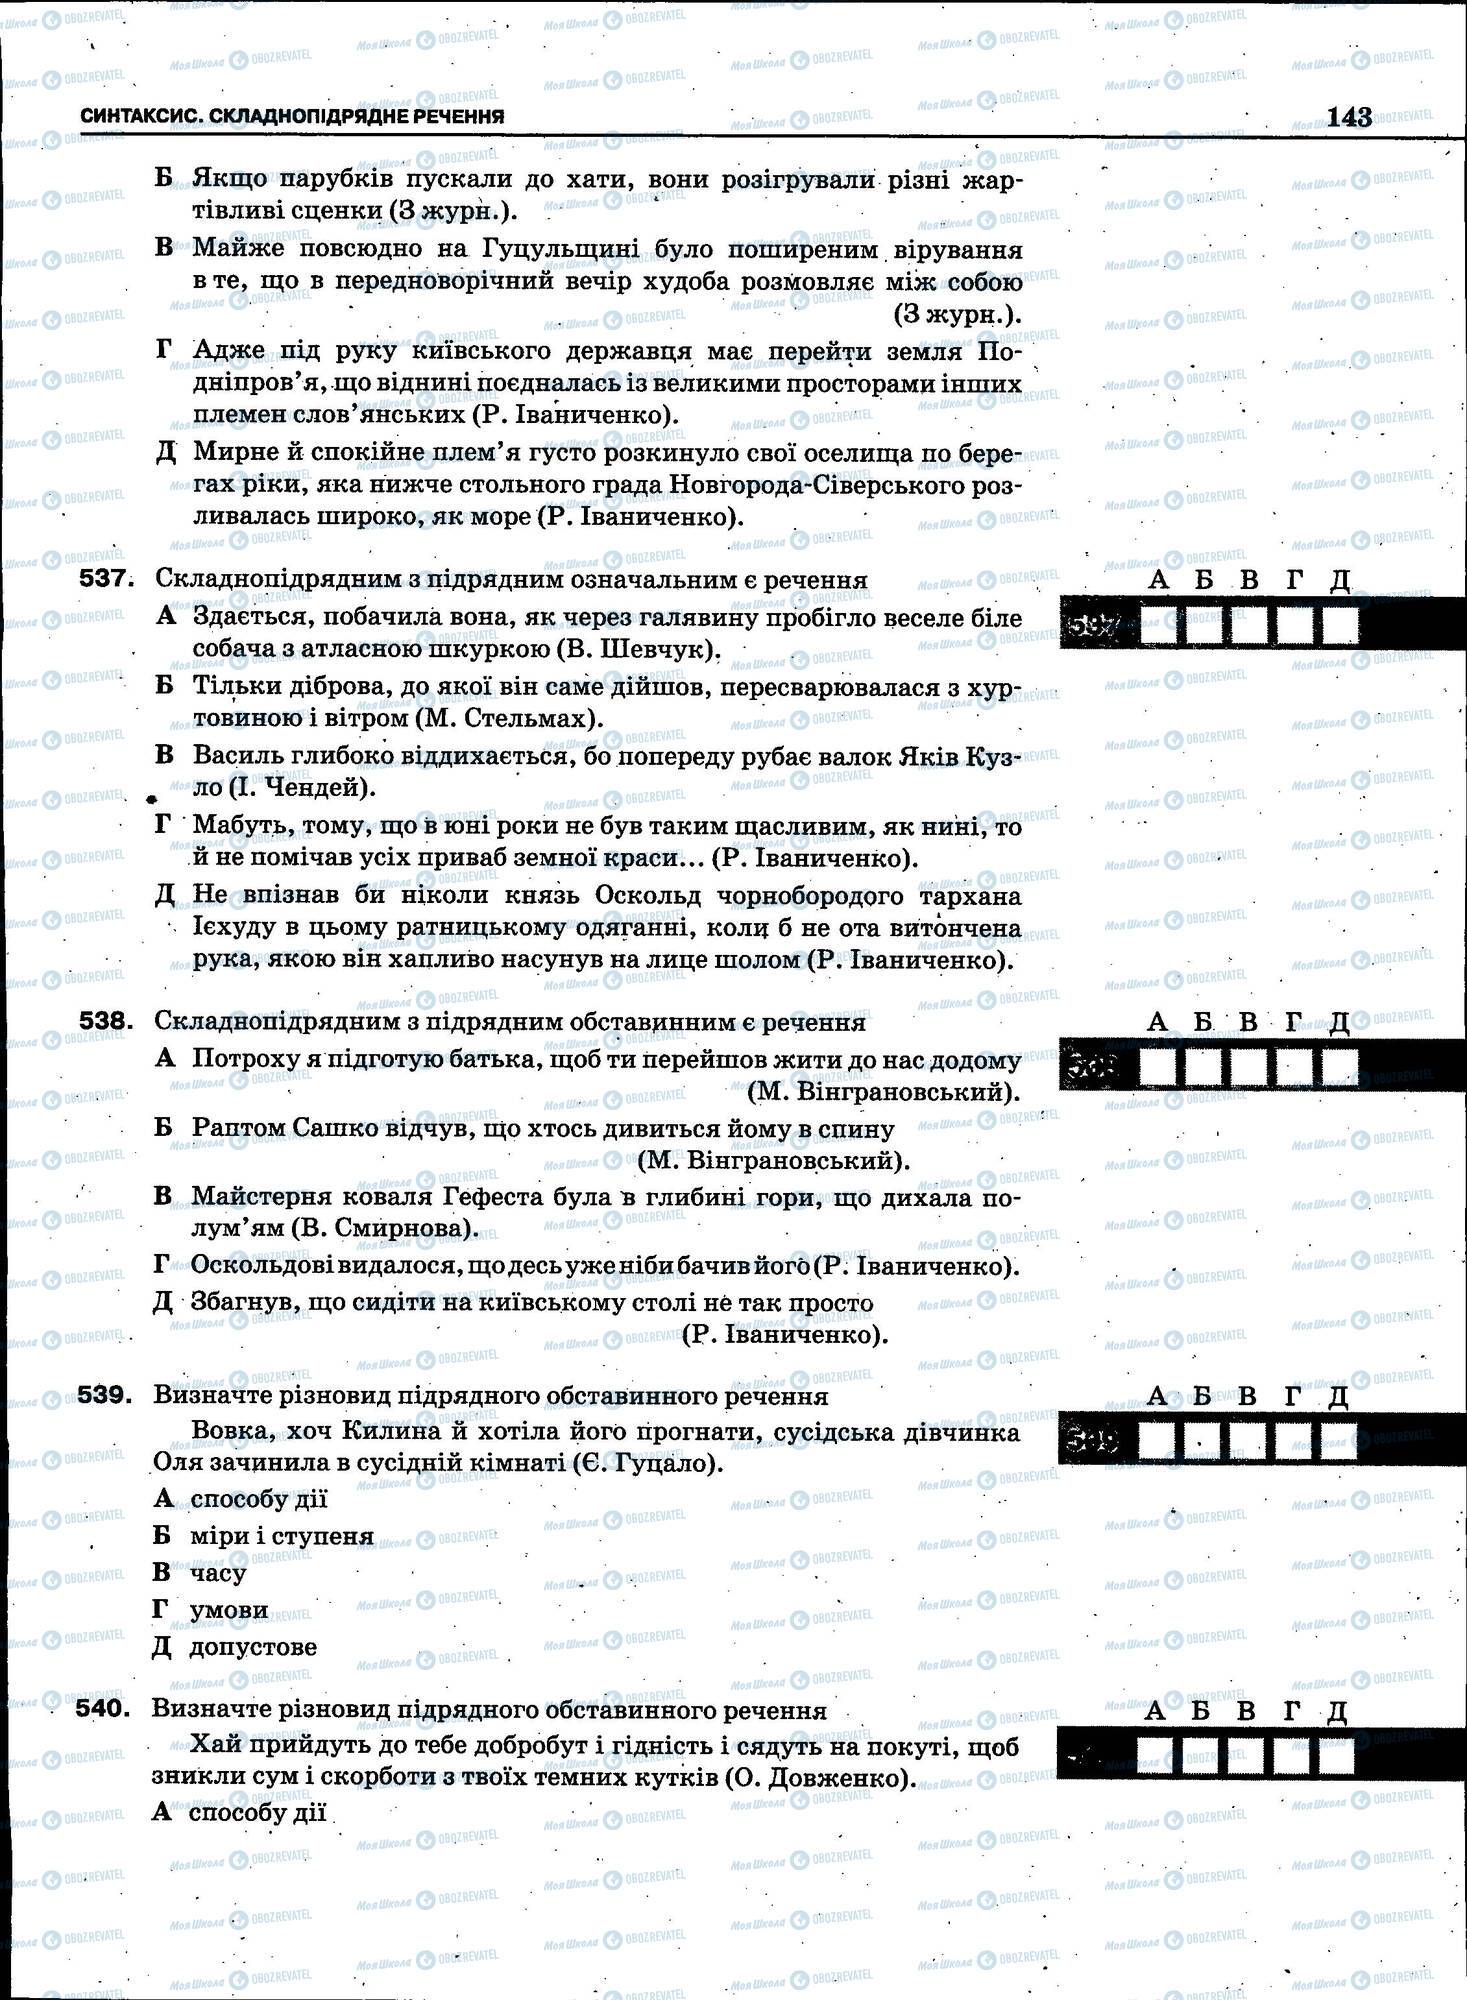 ЗНО Укр мова 11 класс страница 143